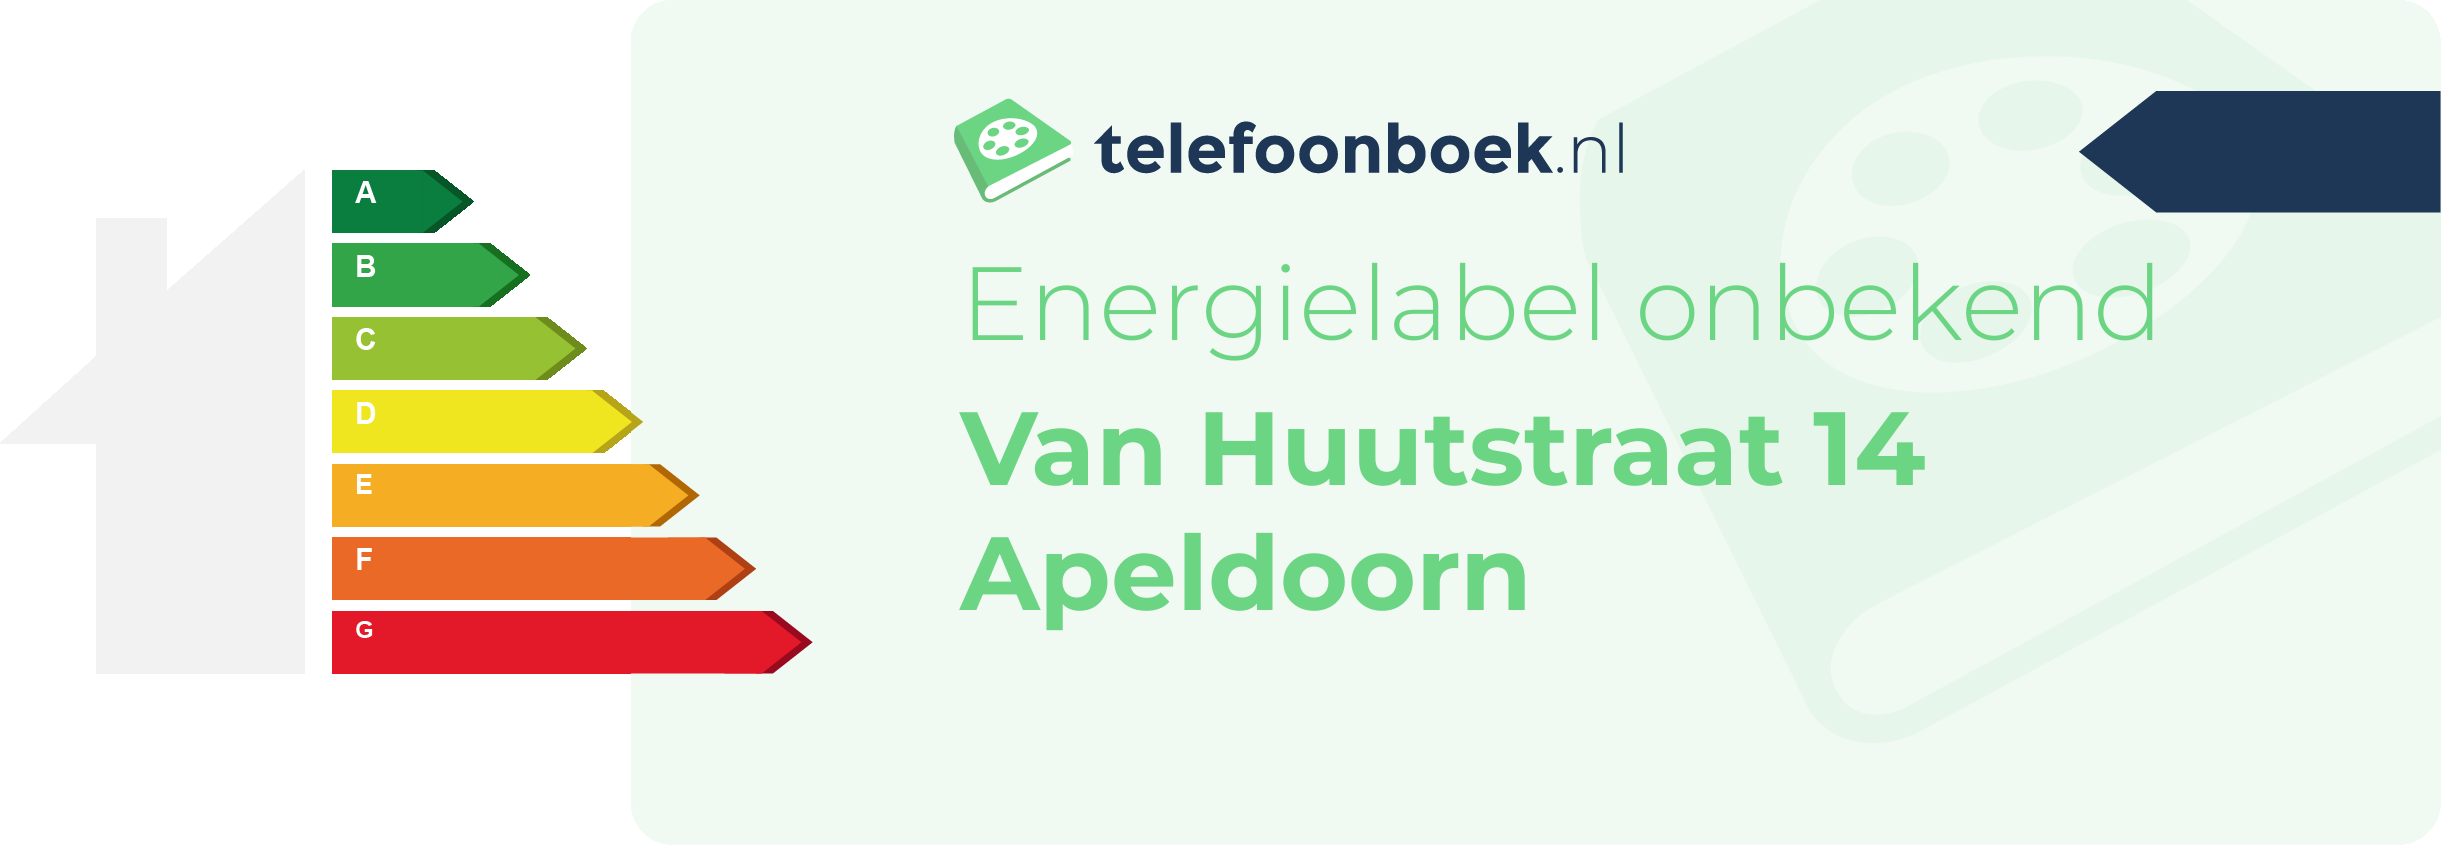 Energielabel Van Huutstraat 14 Apeldoorn